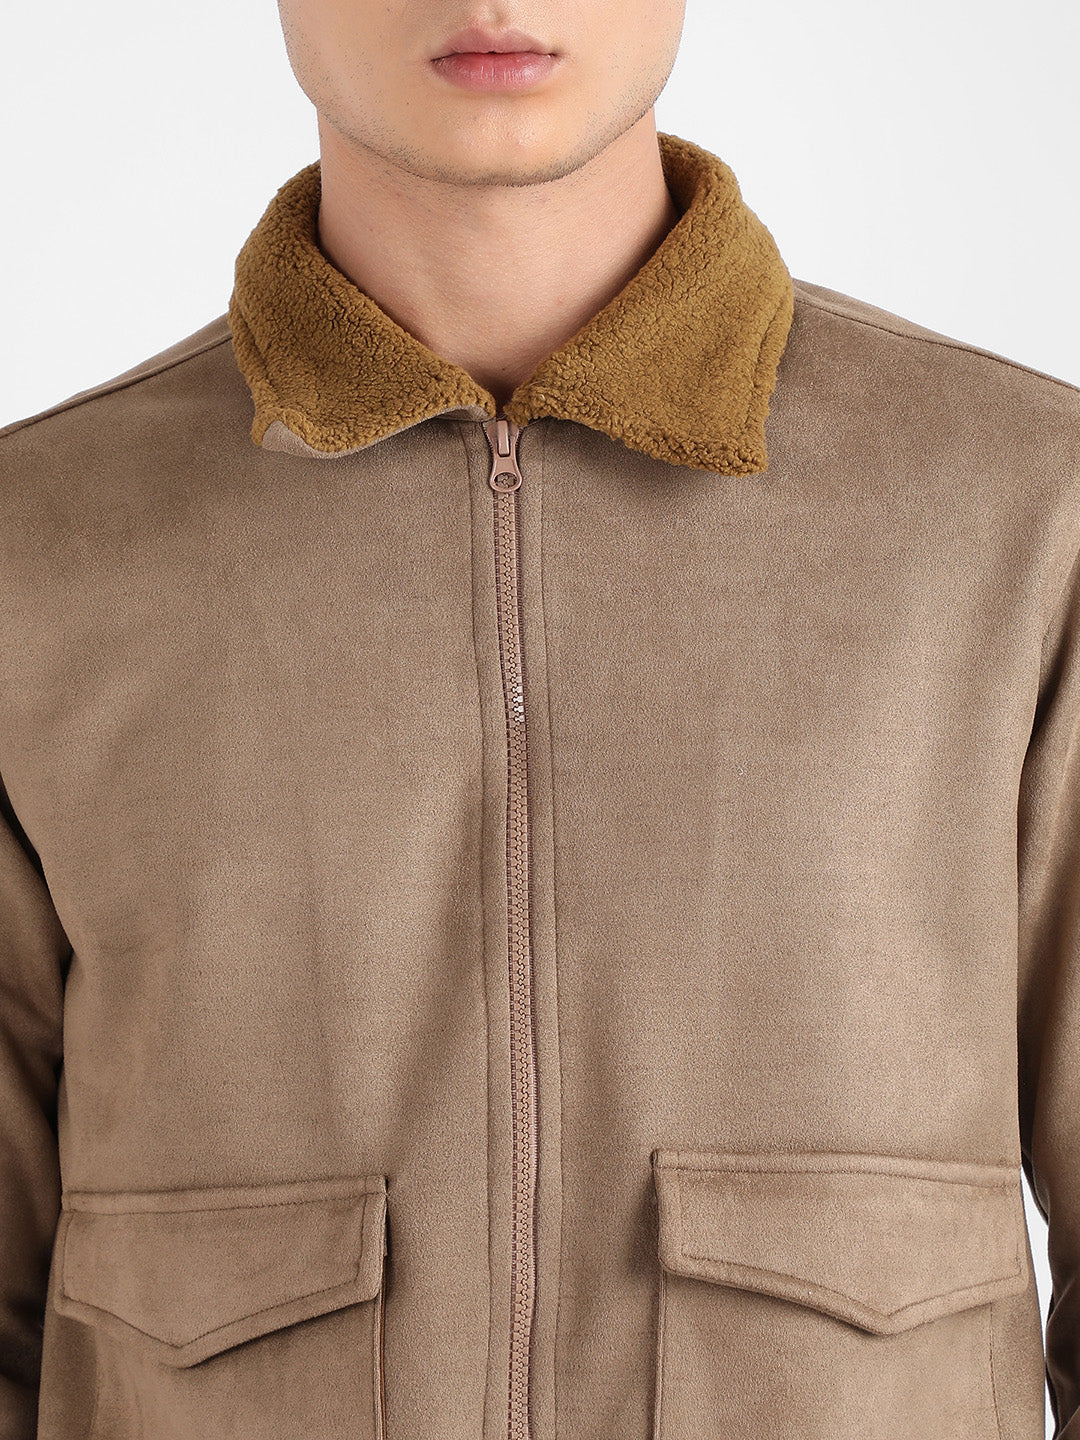 Men's Beige Zip-Front Jacket With Fleece Collar